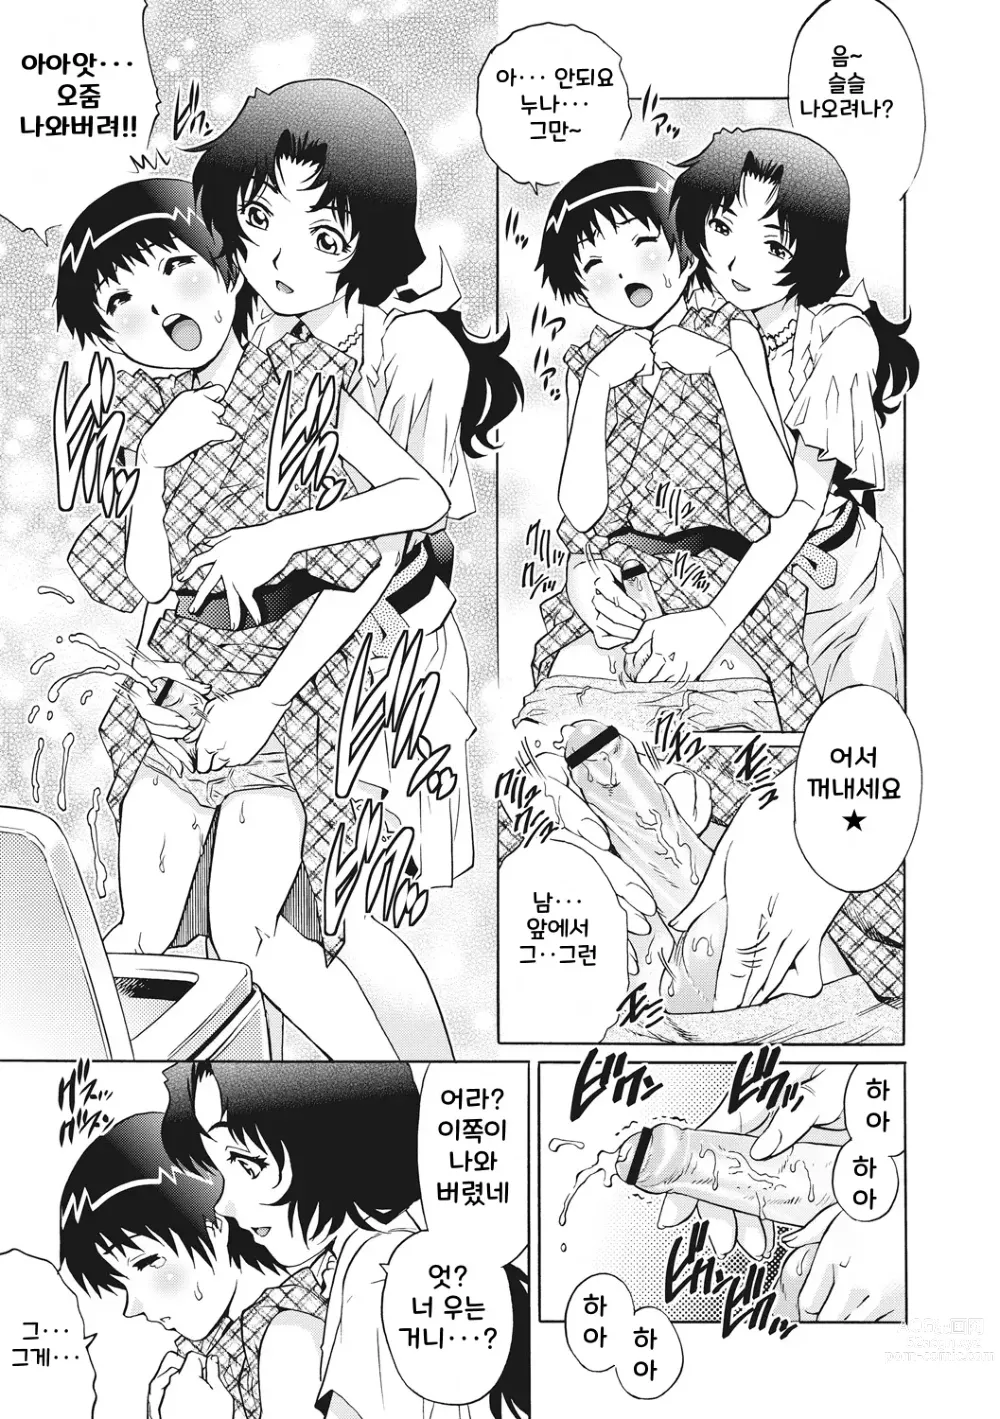 Page 115 of manga Doutei Viking!